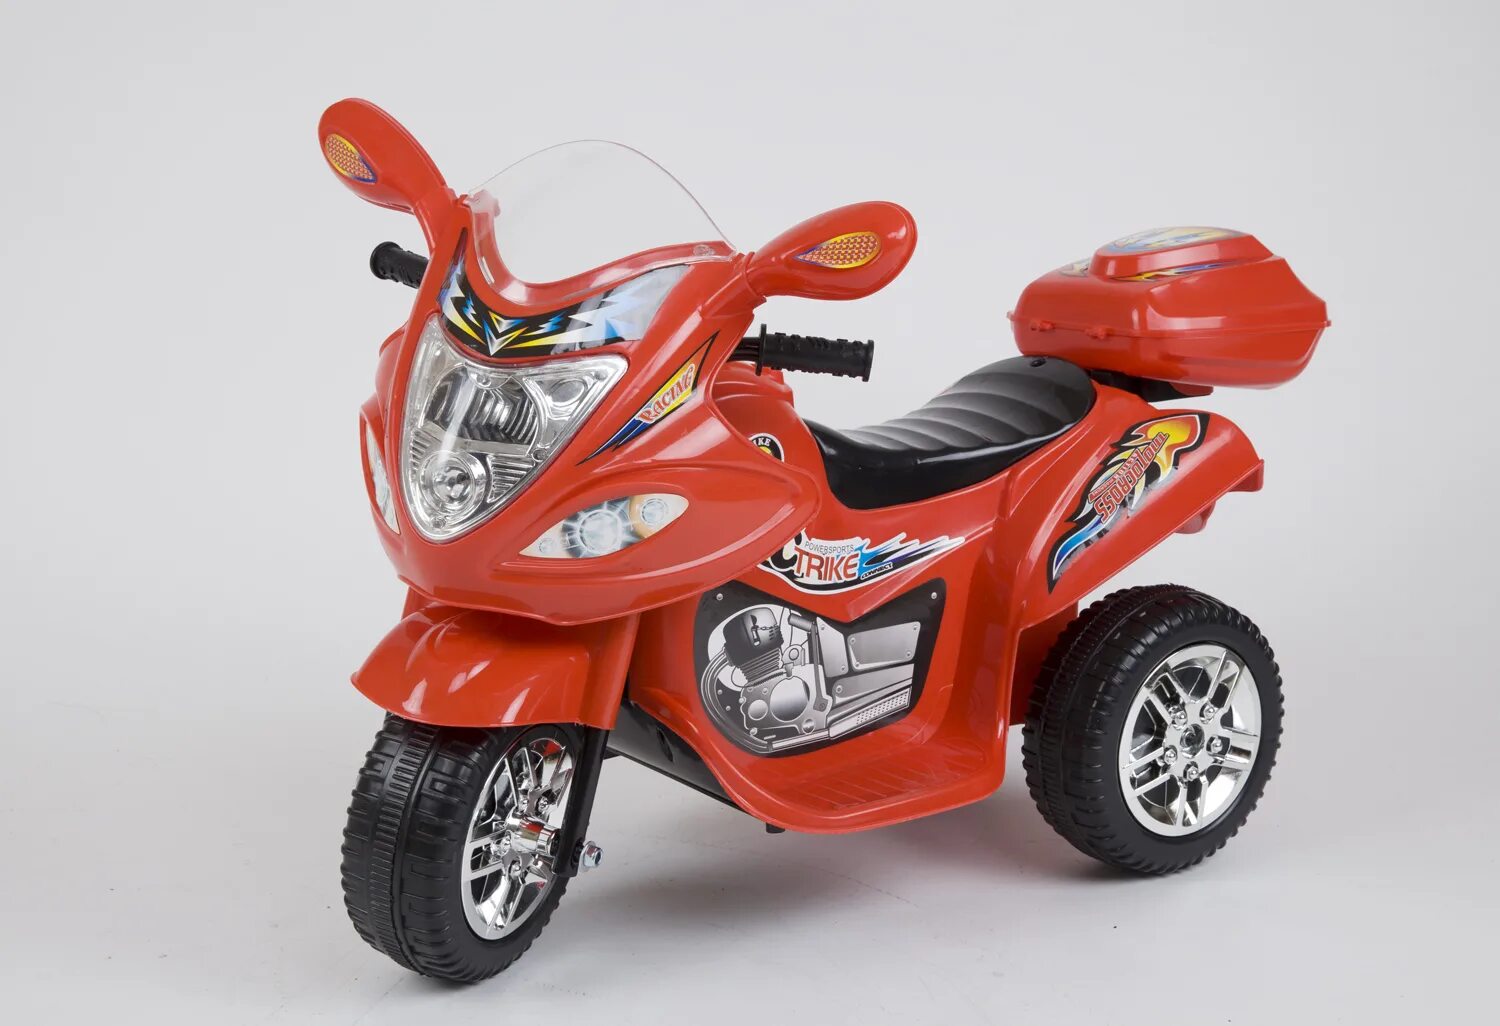 Аккумуляторный мотоцикл детский Bee 628. Детский мотоцикл Hawk 52111. Мотоцикл трехколёсный аккумуляторный ТМ Racing 172803 красный. Мотоцикл Полесье детский. Купить детский мопед